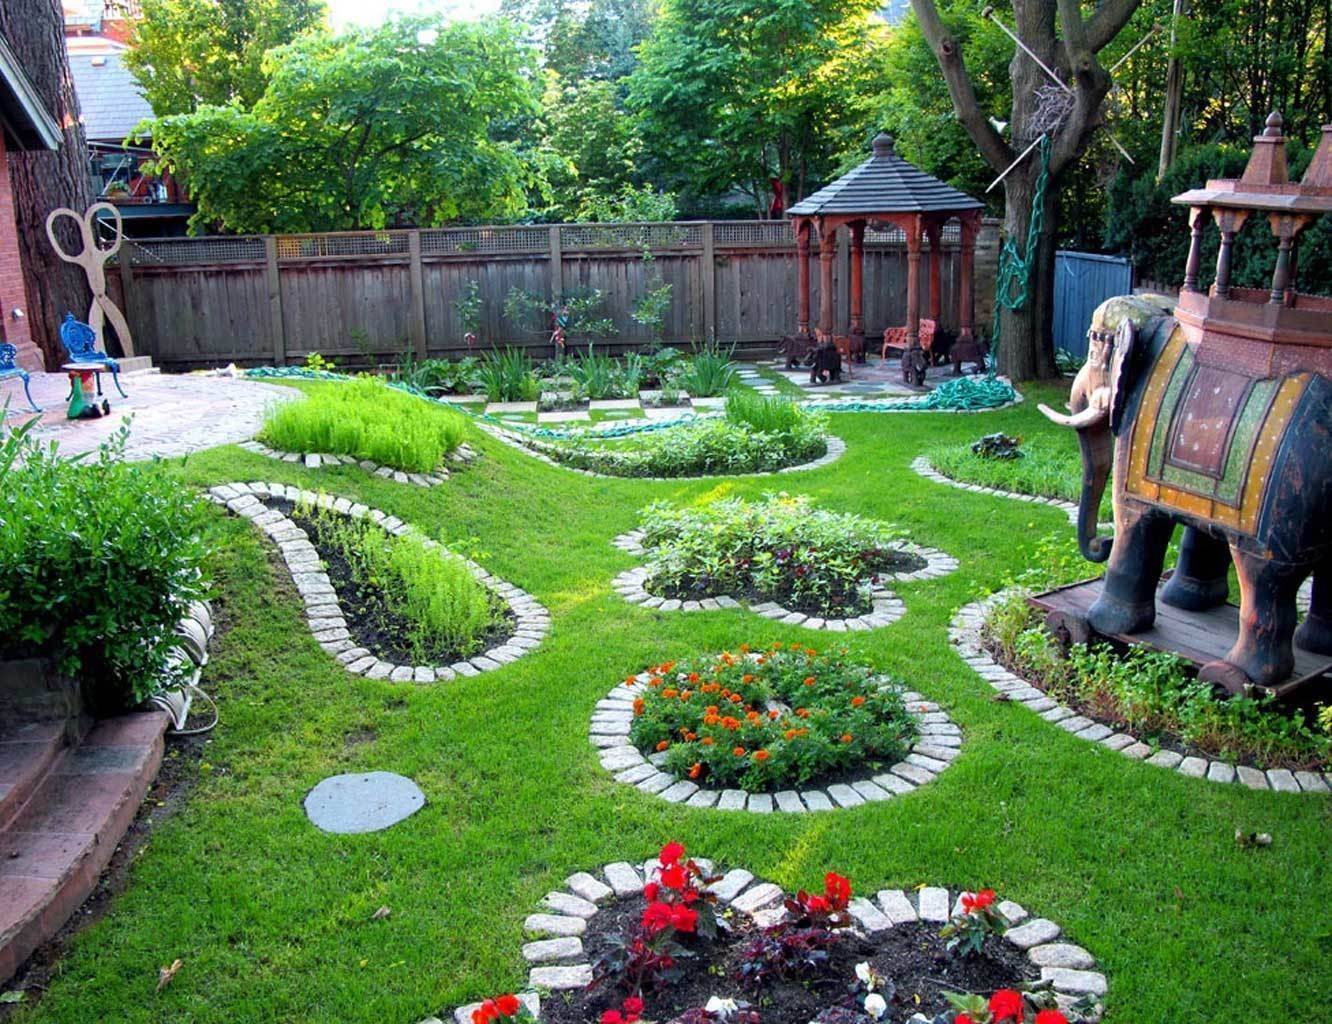 Как оформить сад своими руками — полезные советы и самые оригинальные идеи смотрите в обзоре на фото!